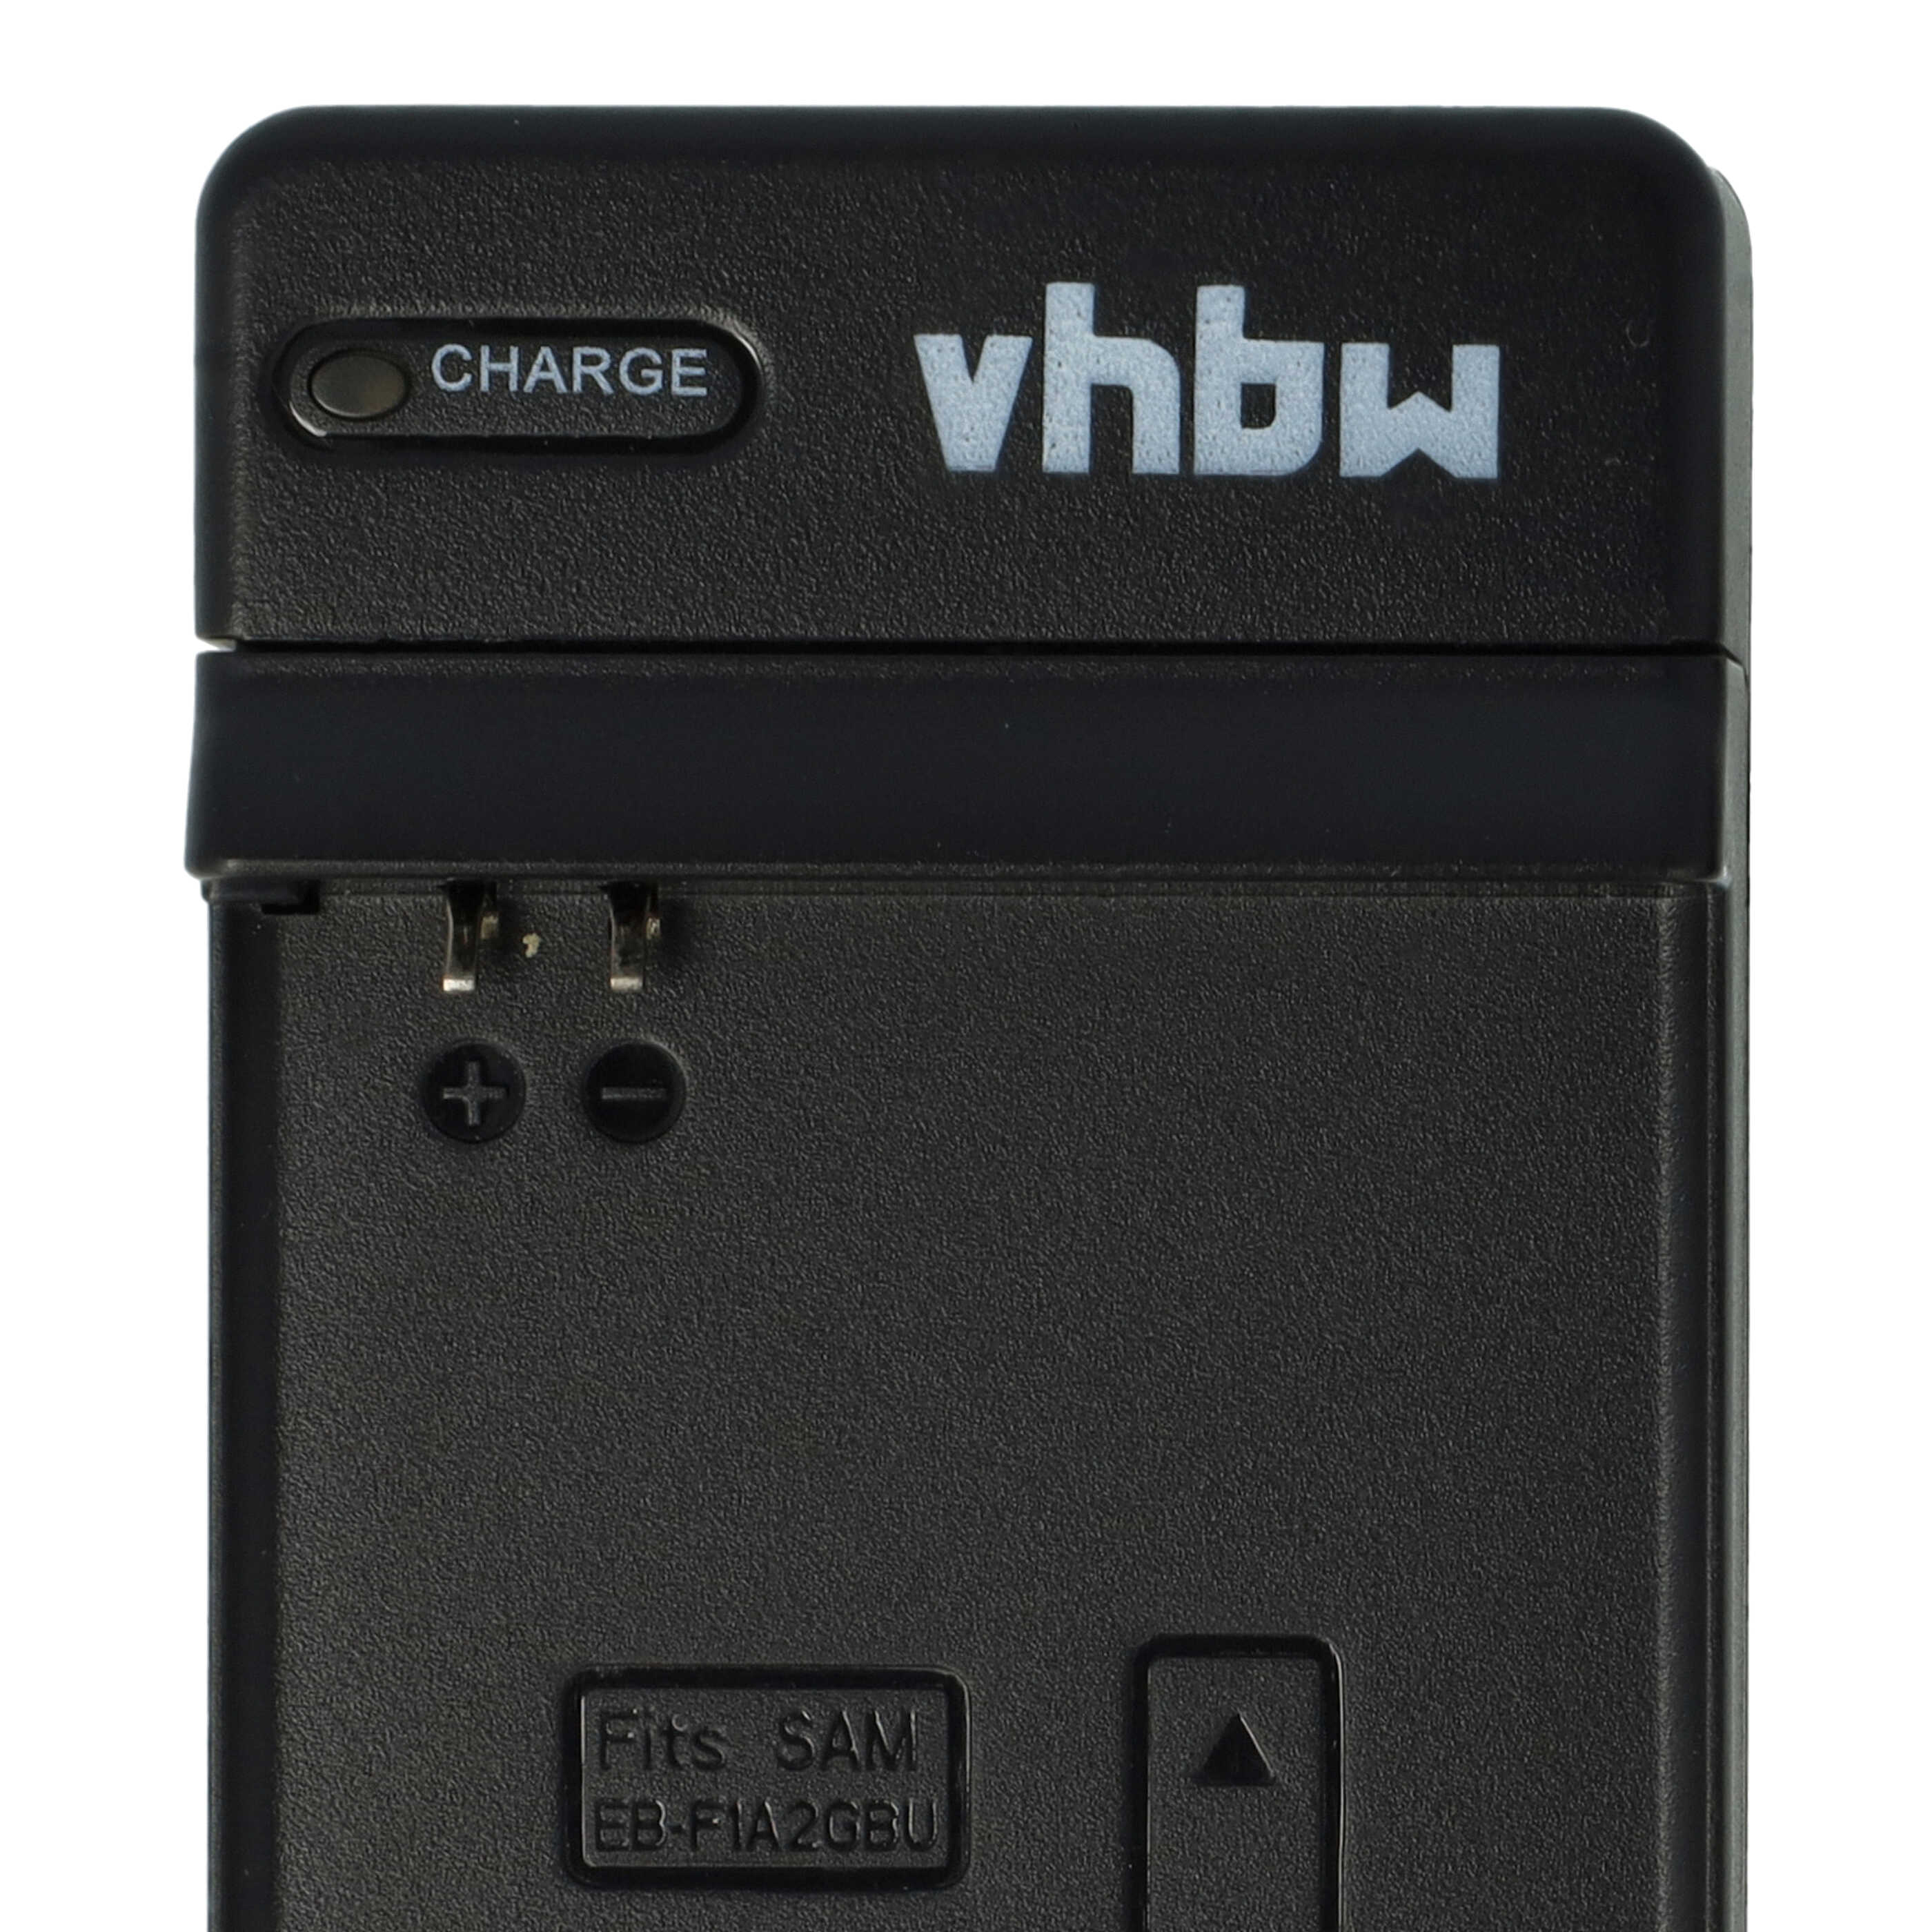 Station de charge micro USB pour batterie de smartphone Samsung Samsung SHW-M410 - socle + câble, 40 cm